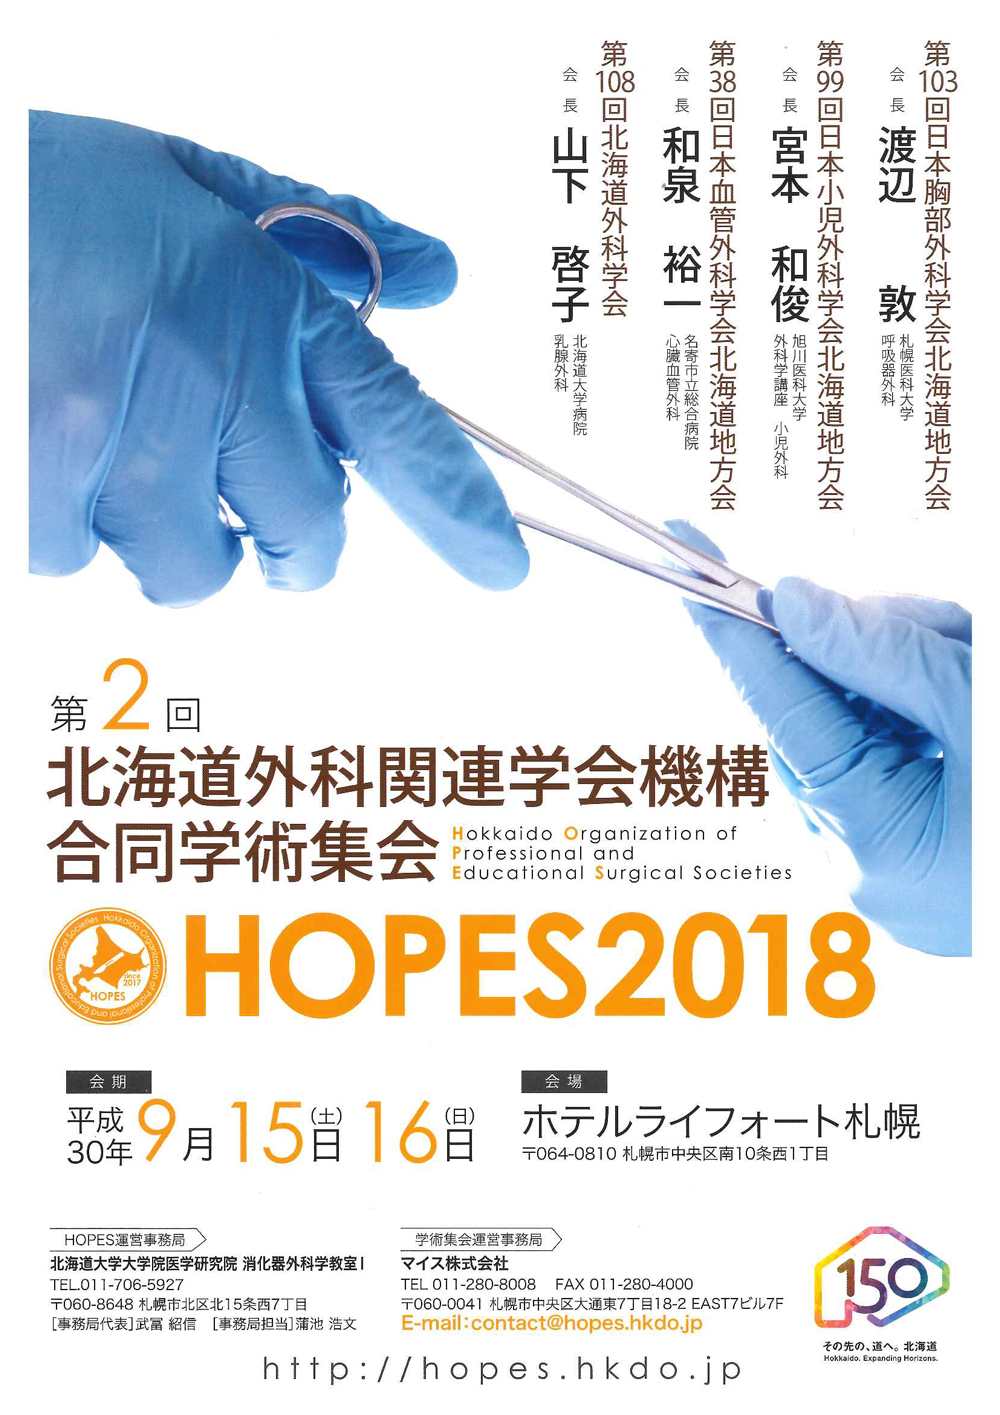 HOPES2018